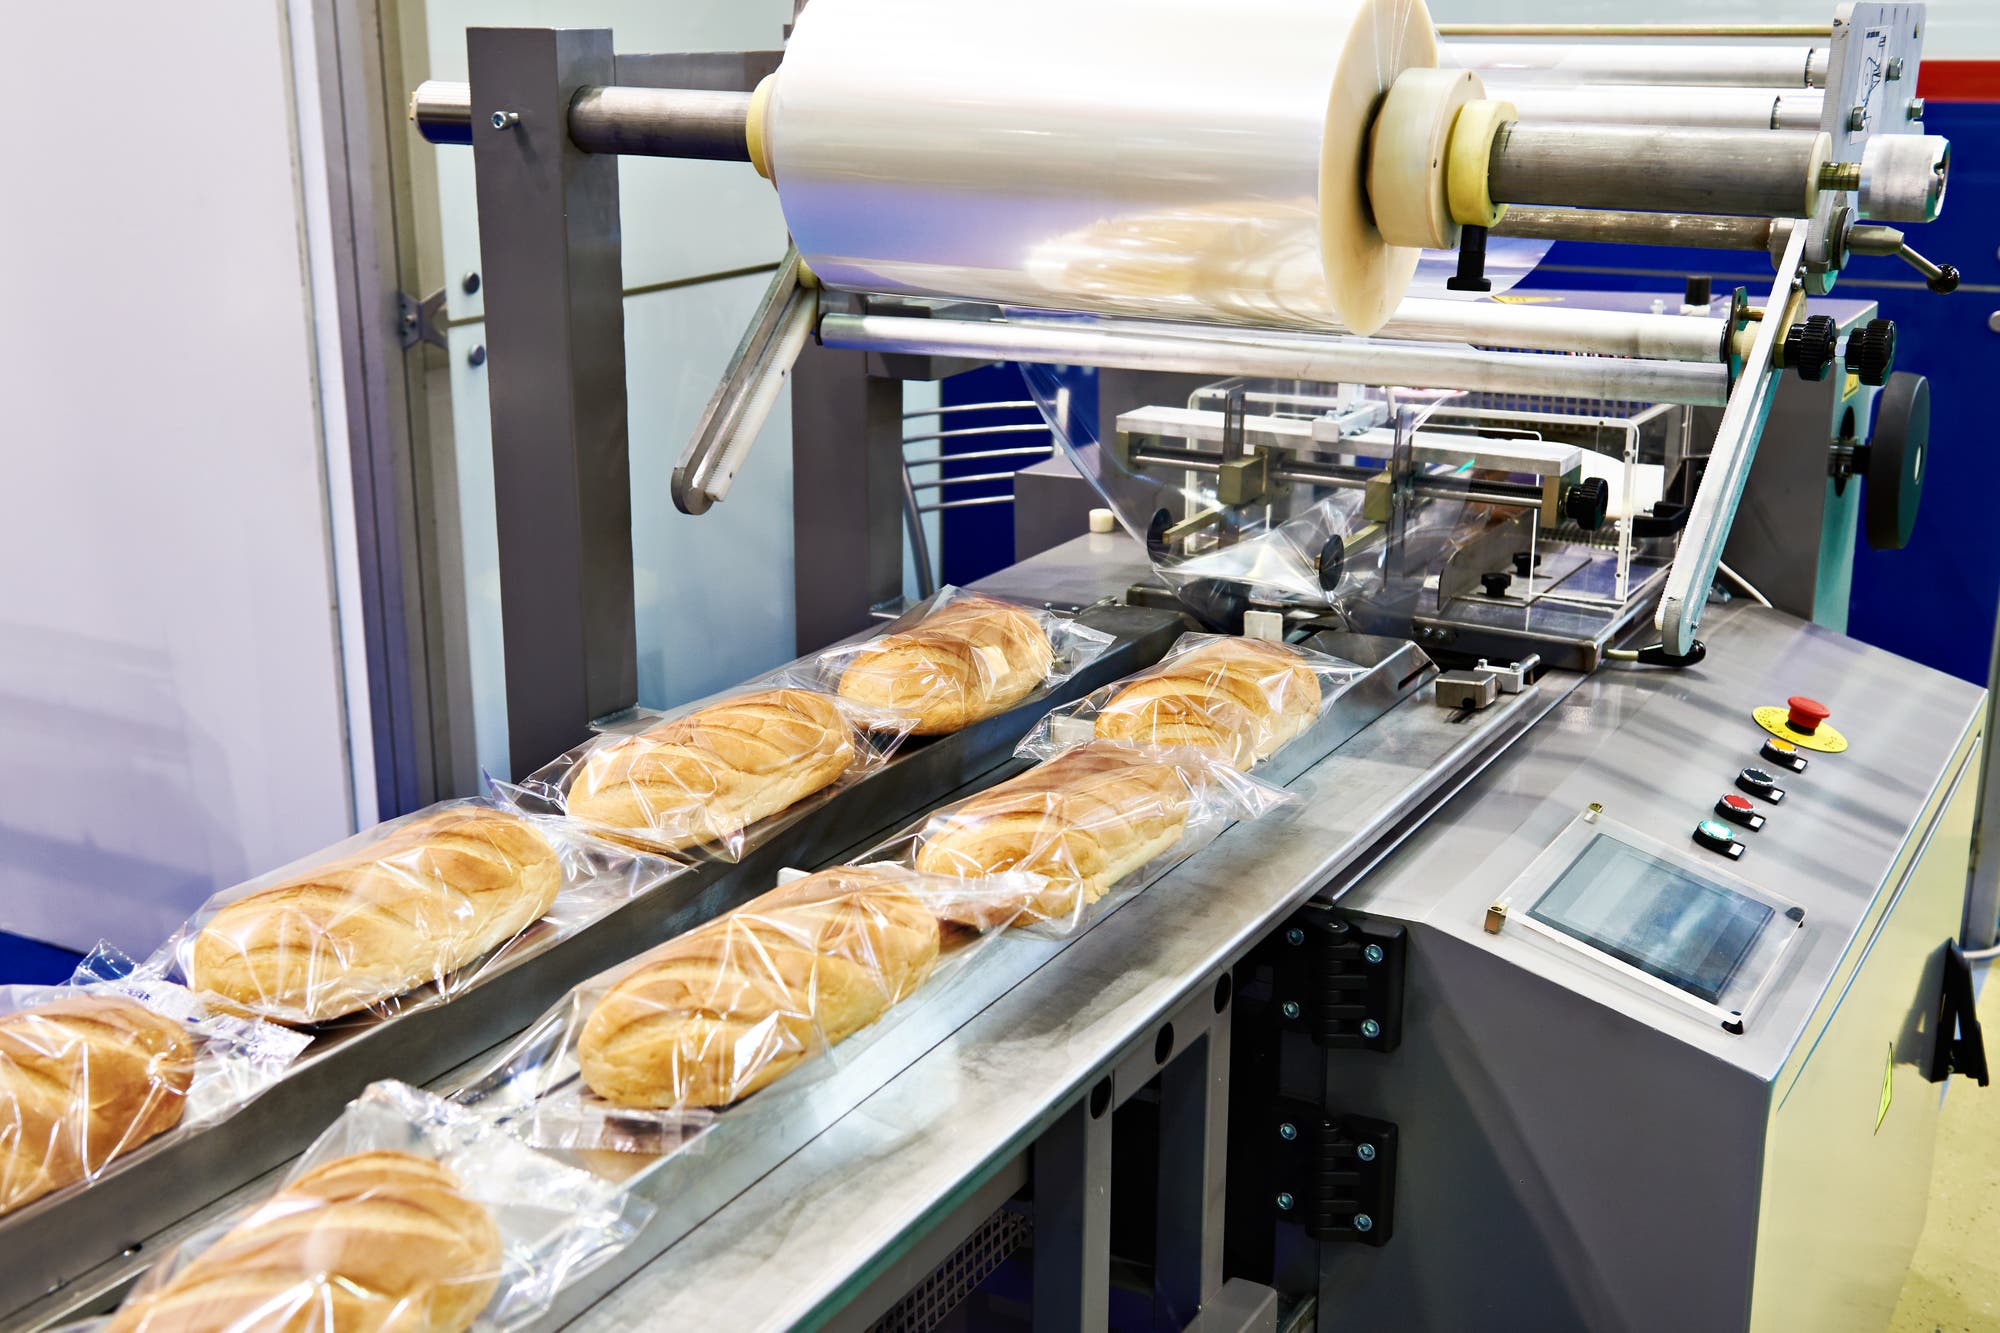 Die Deutschen essen inzwischen bis zu 70 Prozent Industriebrot, hergestellt in Backfabriken. Laut NOVA-Klassifizierung zählt solch Fabrikbrot zu den ultraverarbeiteten Lebensmitteln.